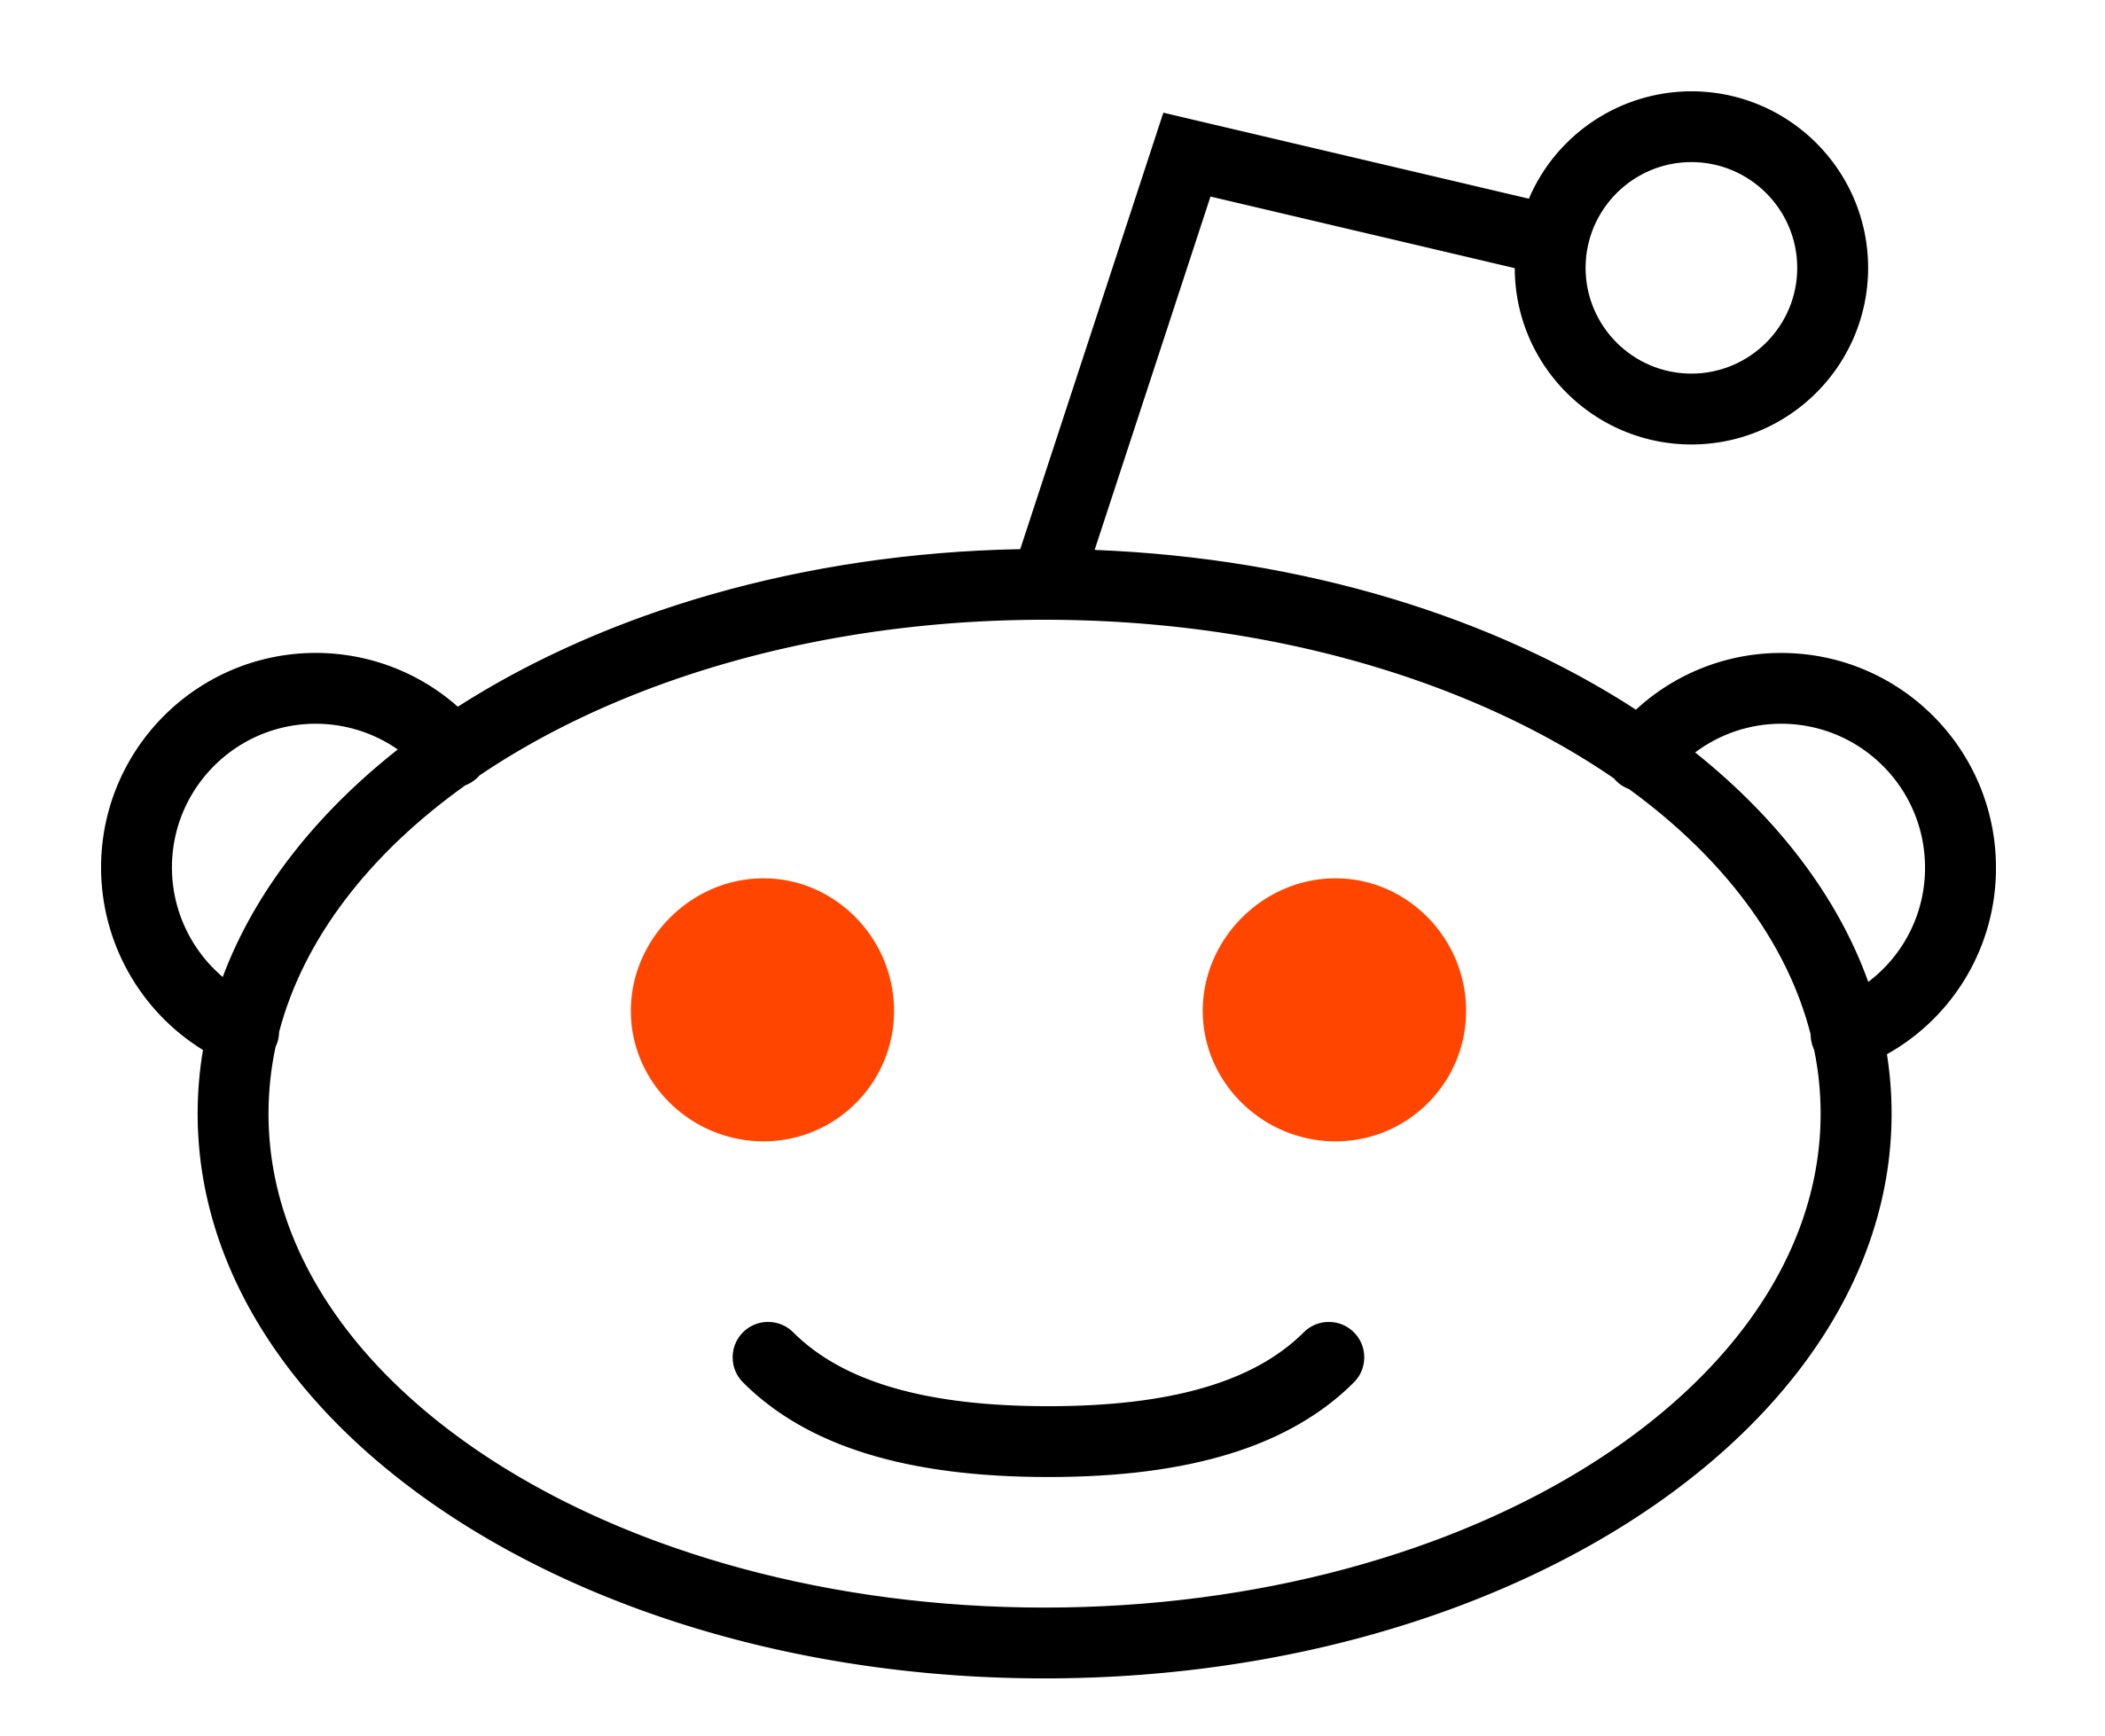 Reddit.com Logo - Reddit Logo, Reddit Symbol, Meaning, History and Evolution